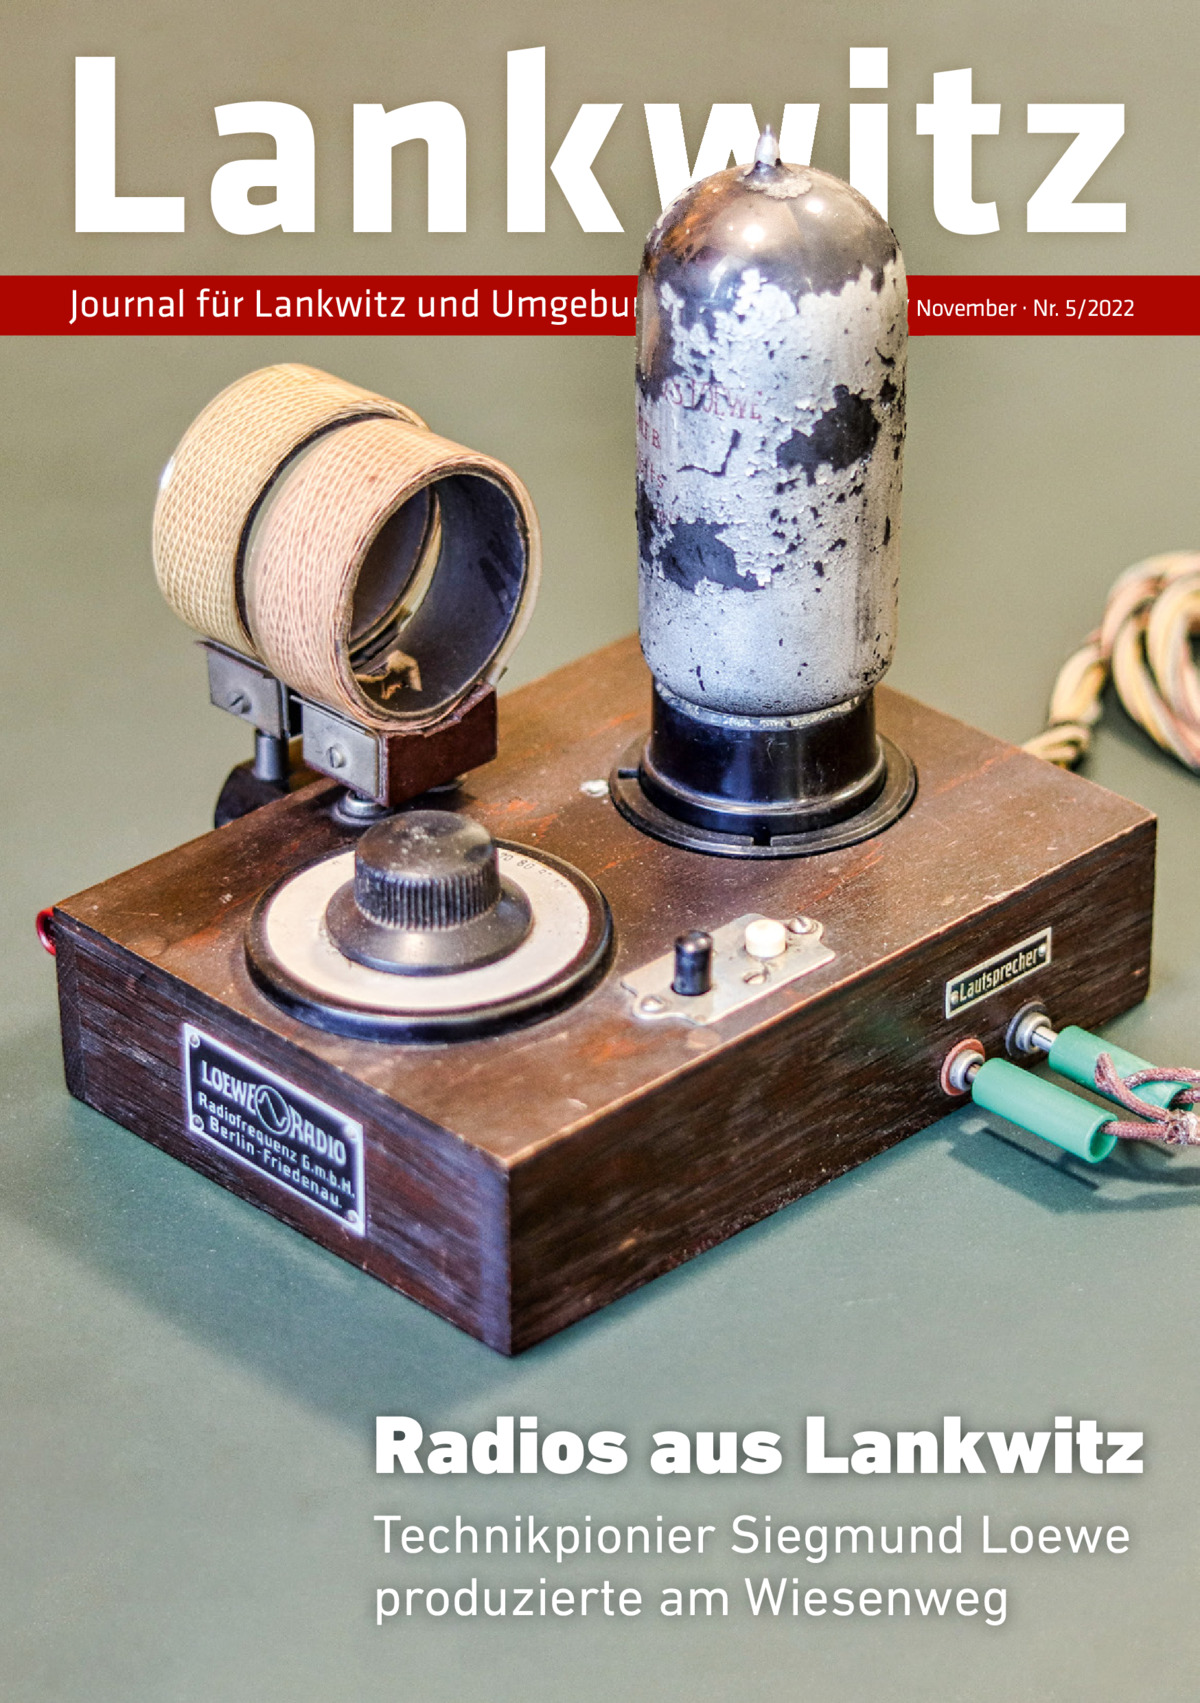 Lankwitz Journal für Lankwitz und Umgebung  Oktober / November · Nr. 5/2022  Radios aus Lankwitz Technikpionier Siegmund Loewe produzierte am Wiesenweg